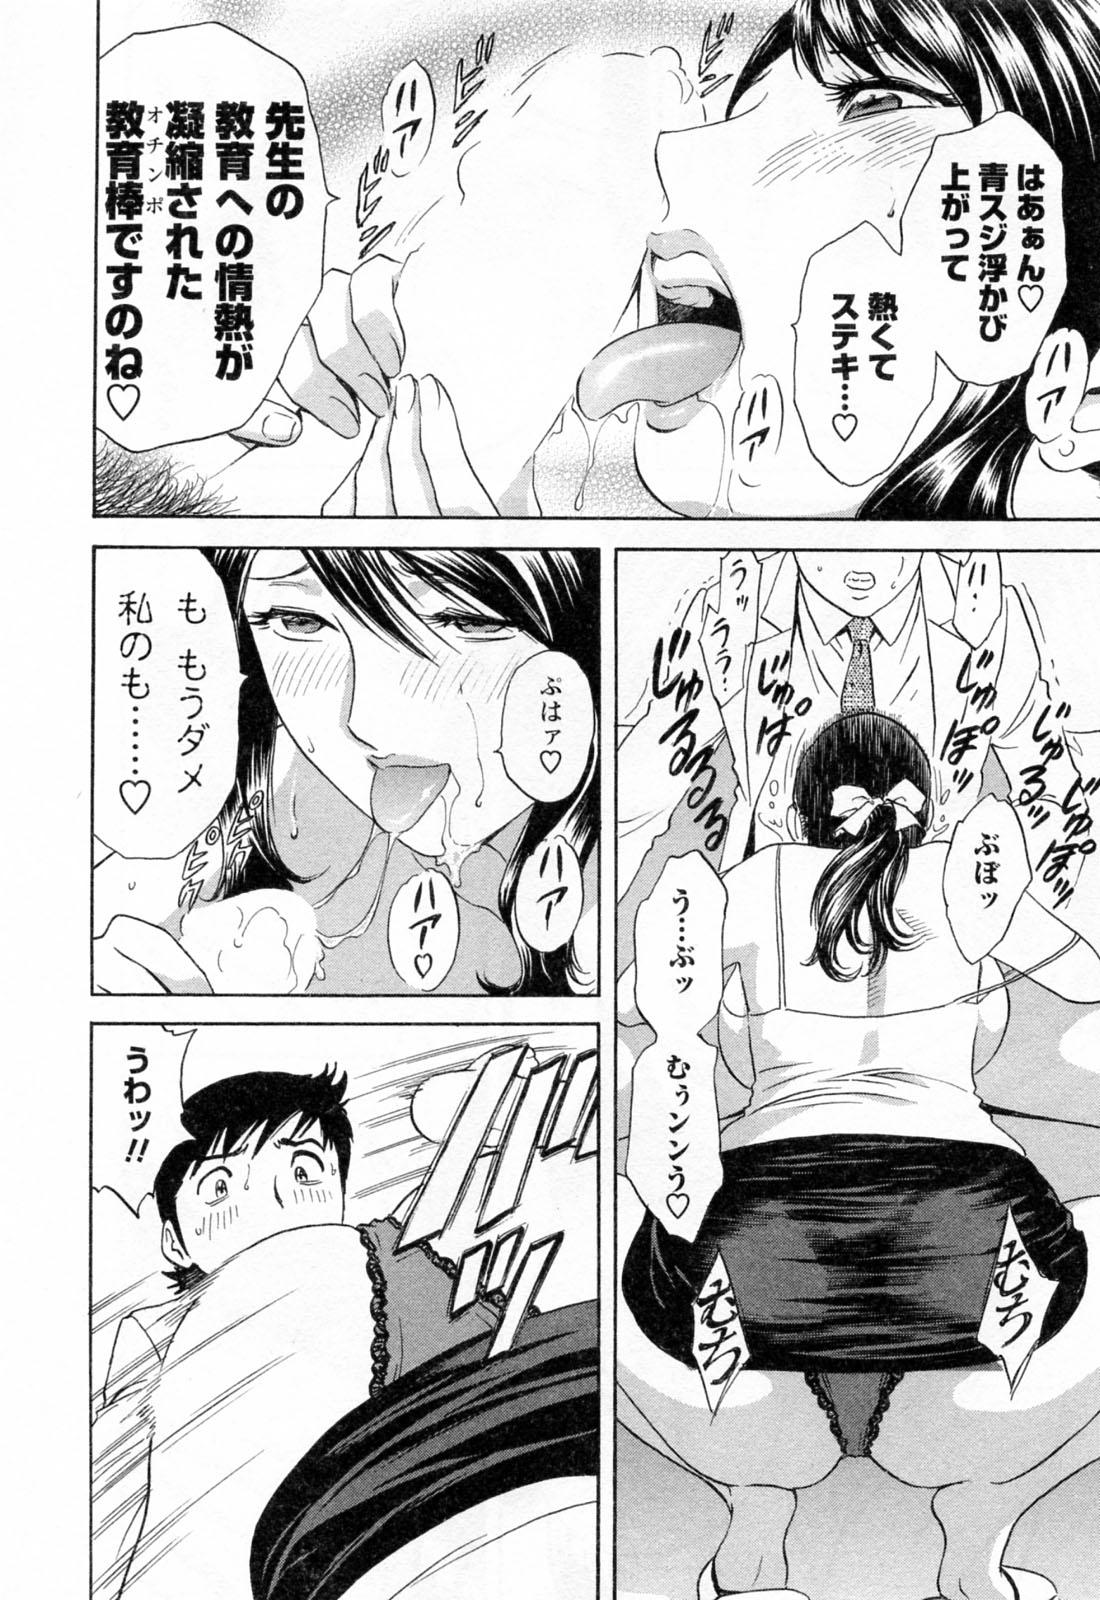 [Hidemaru] Mo-Retsu! Boin Sensei (Boing Boing Teacher) Vol.4 65